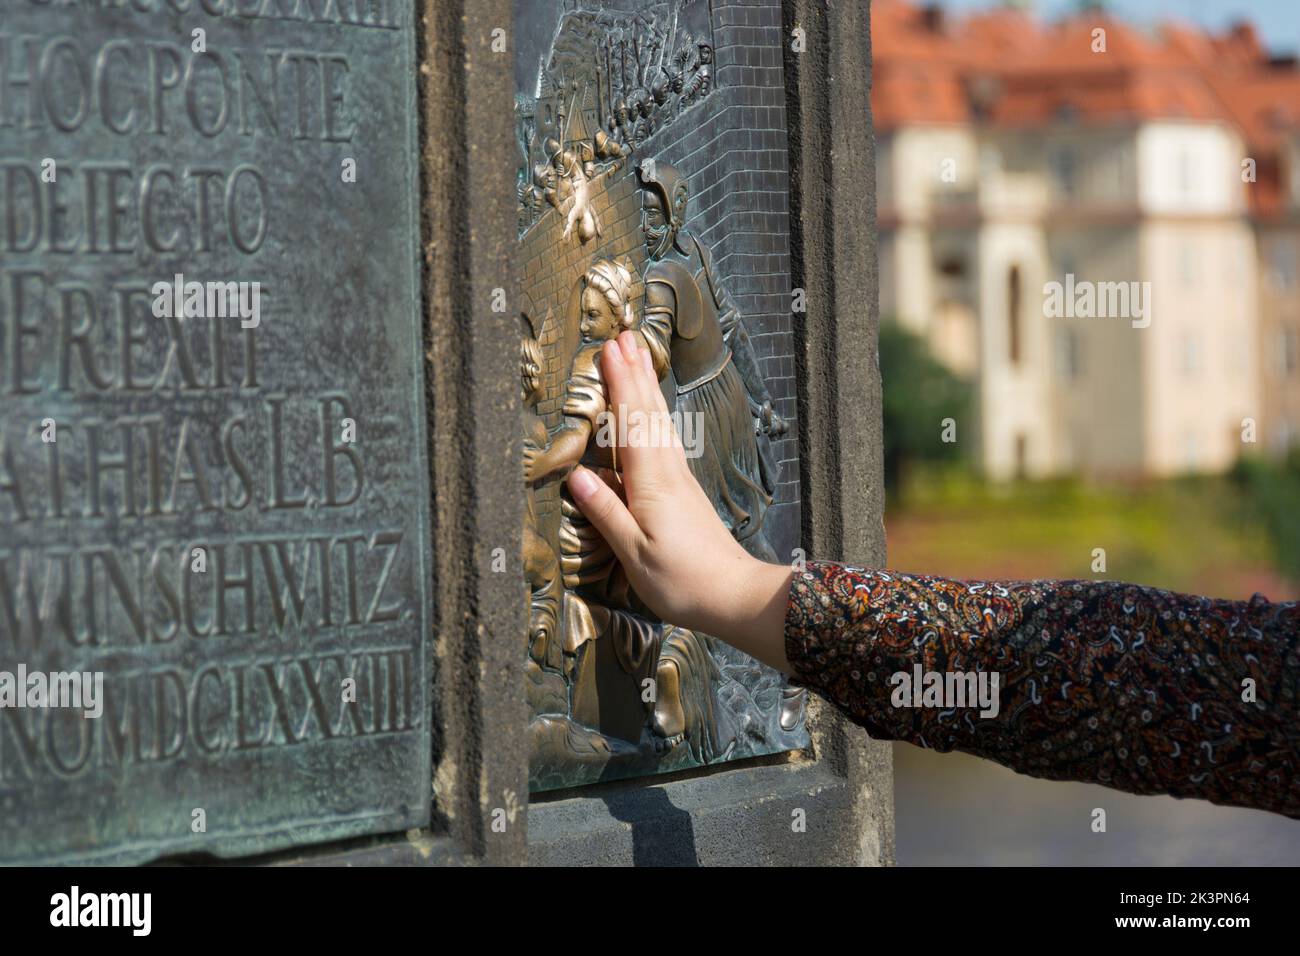 Serie de fotos de Praga: La mano toca la placa de bronce de la estatua de Nepomuk en el Puente de Carlos en Praga Foto de stock